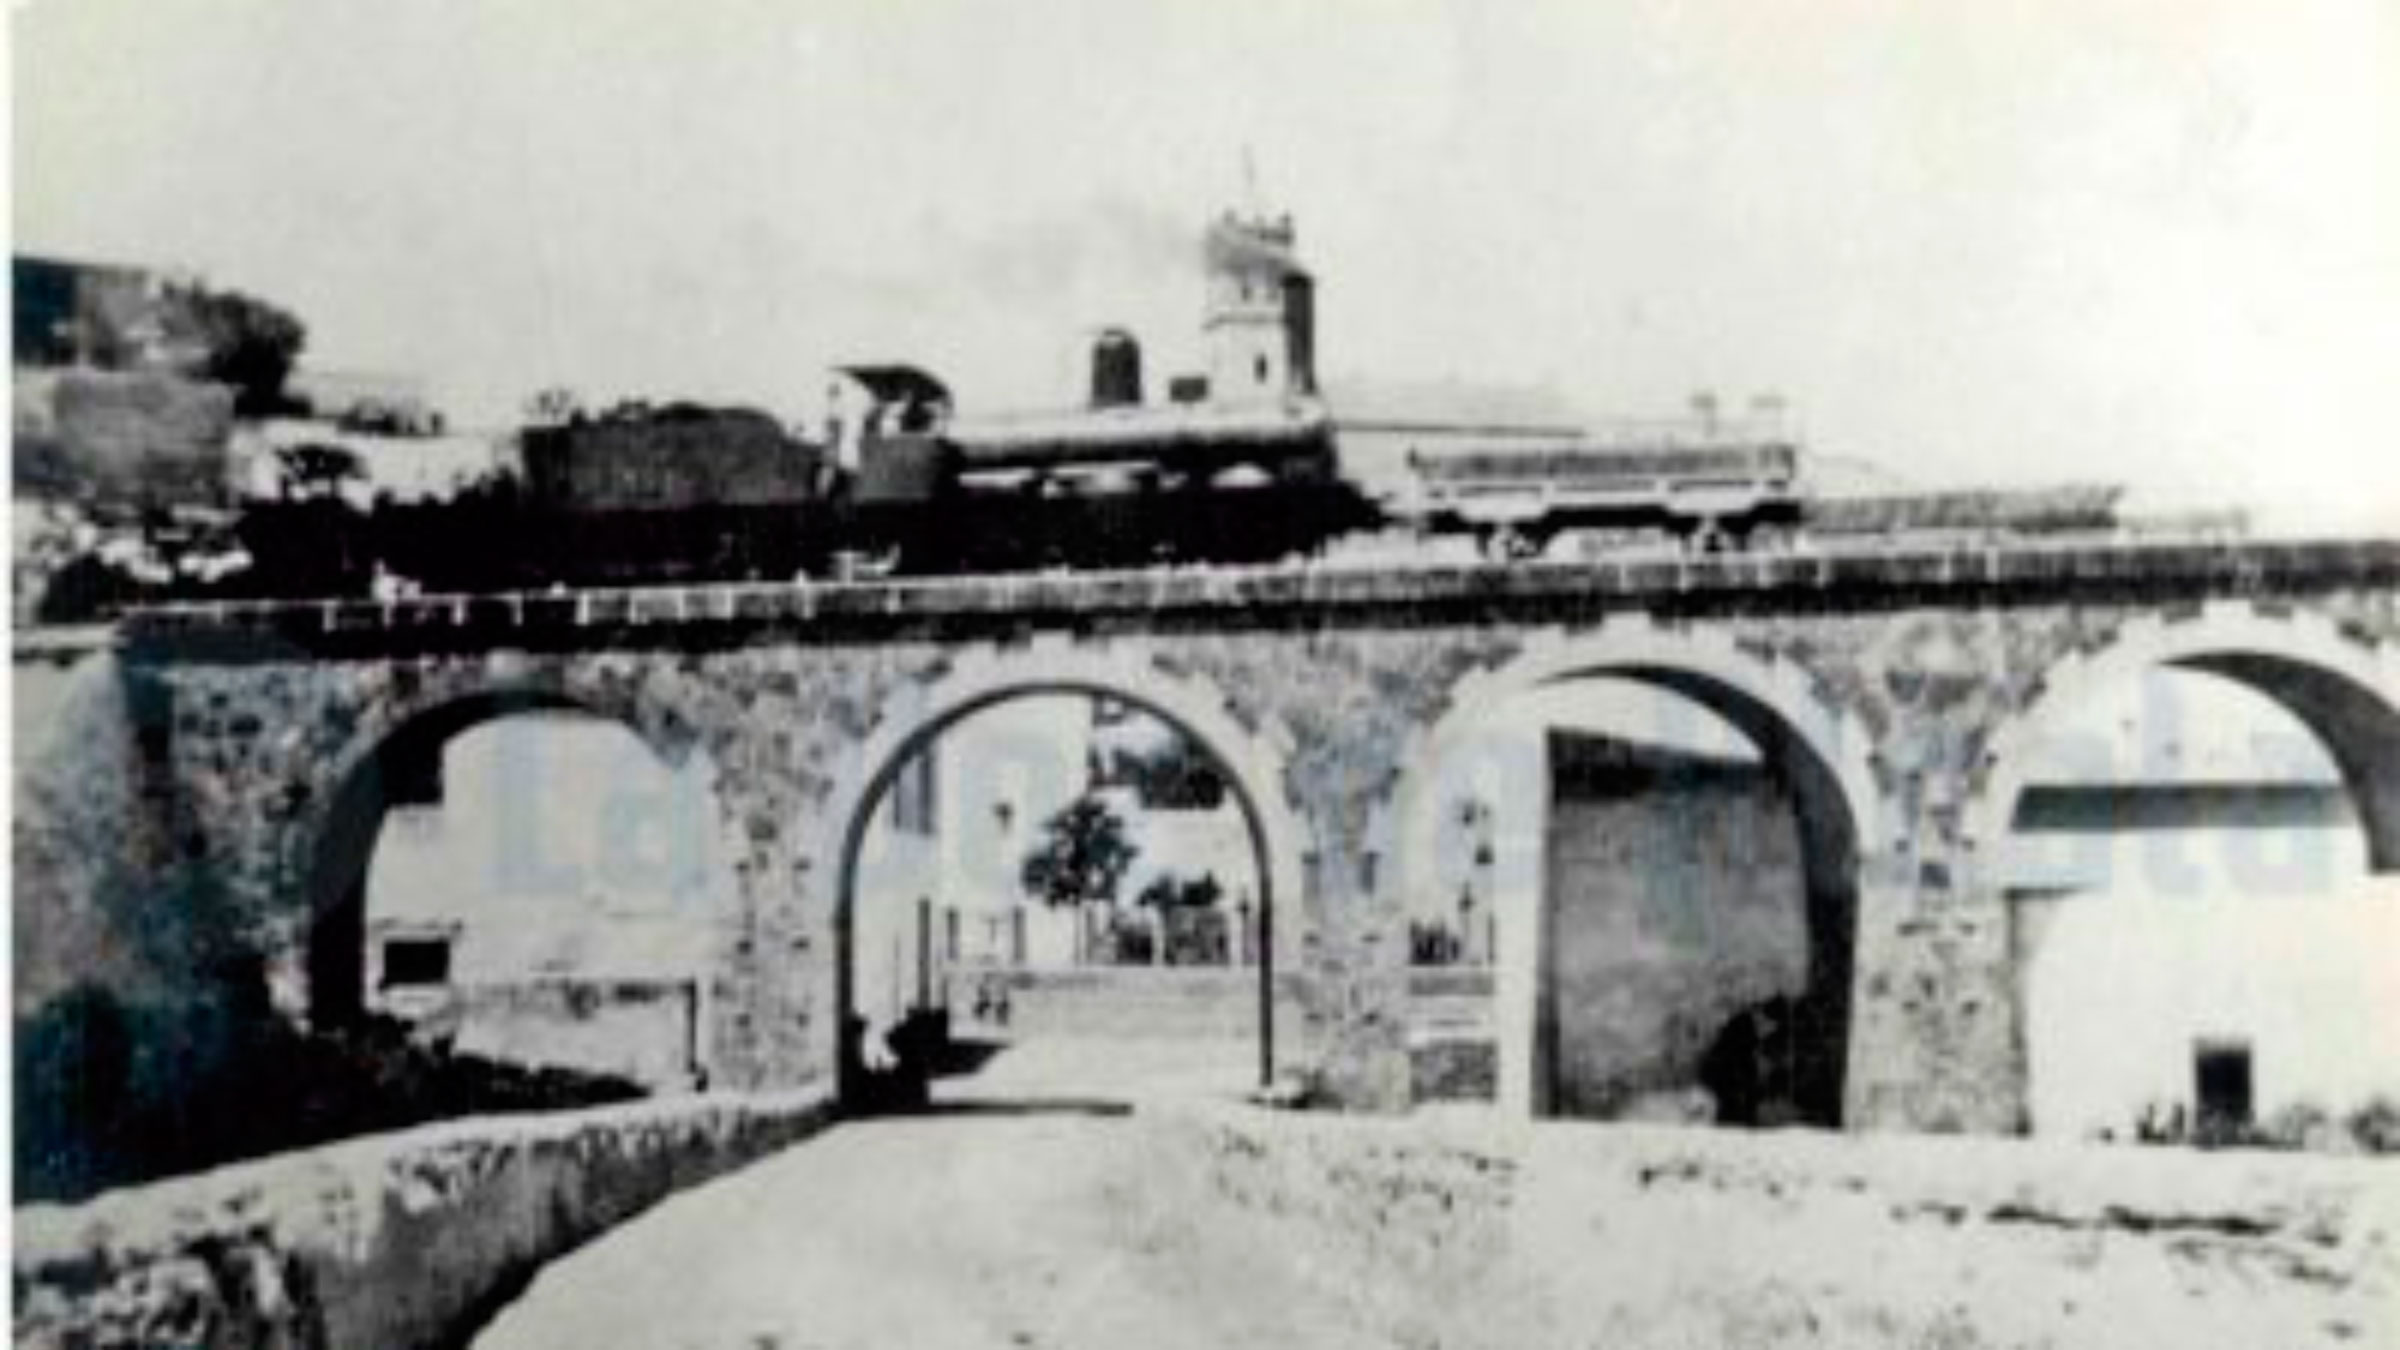 Puente ferroviario por el que pasaba el Tren de los Panaderos, sujeto del último libro de Antonio Gavira